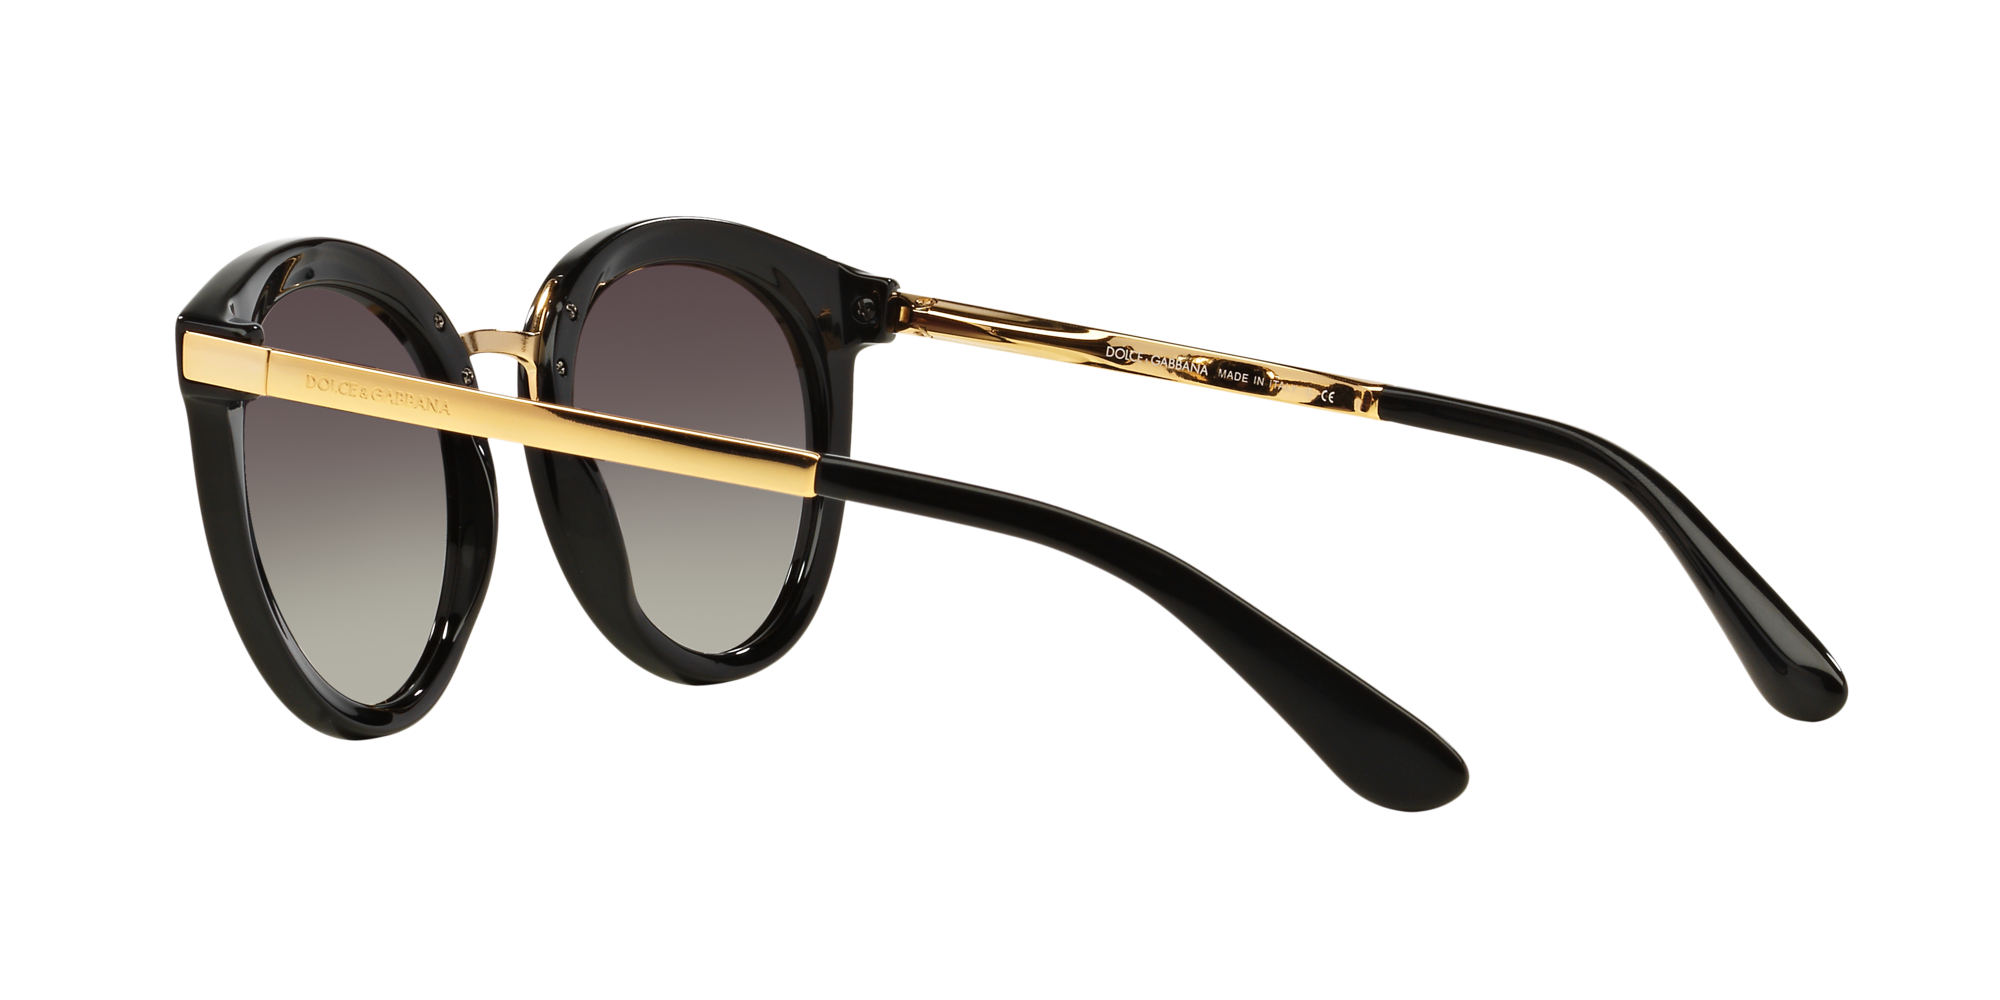 Dolce & Gabbana Sonnenbrille in schwarz DG4268 501/8G 52 